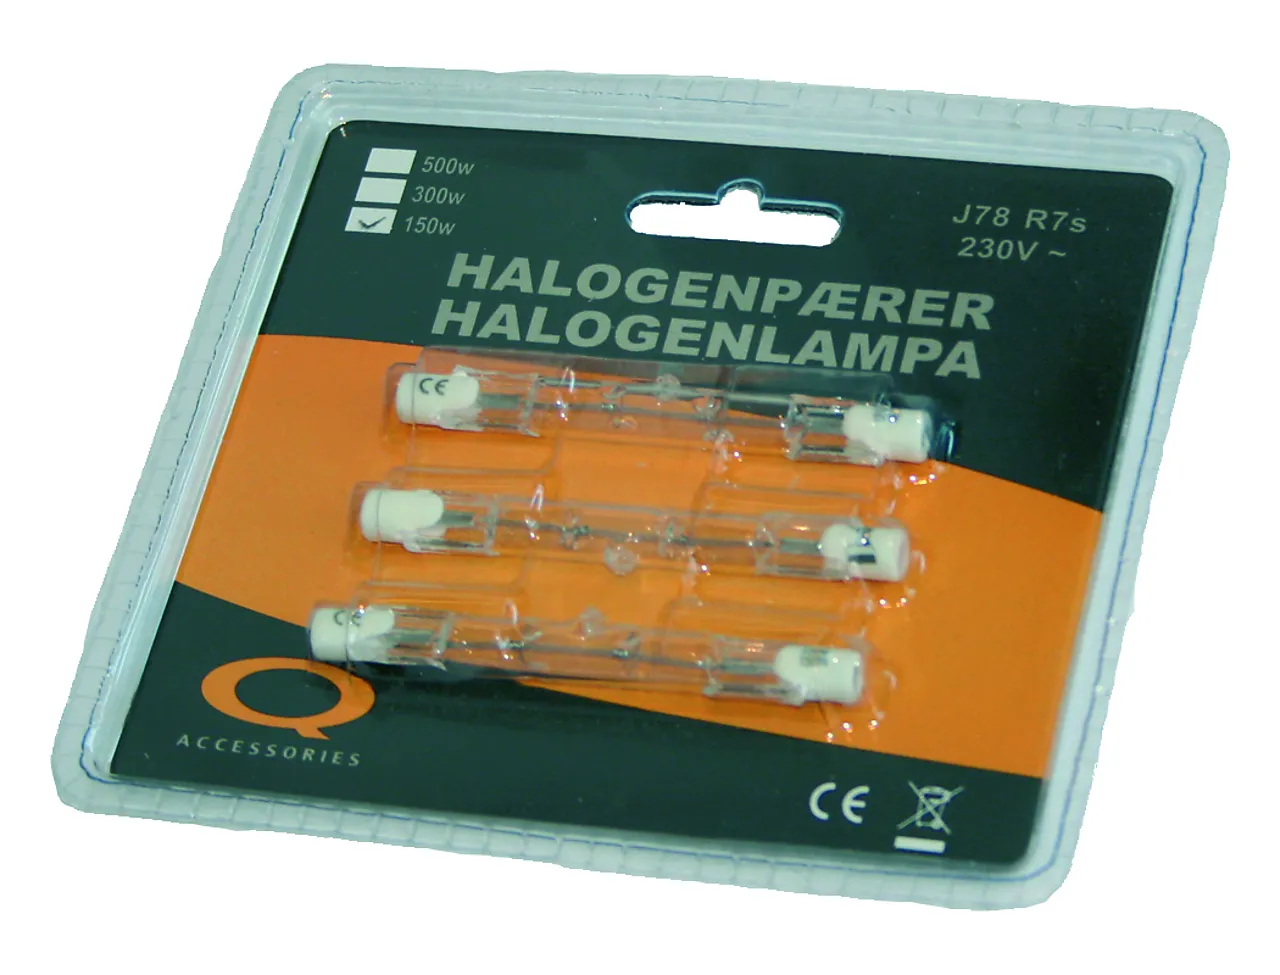 Halogenrør 120 W 78 mm a 3 stk Q-accessories